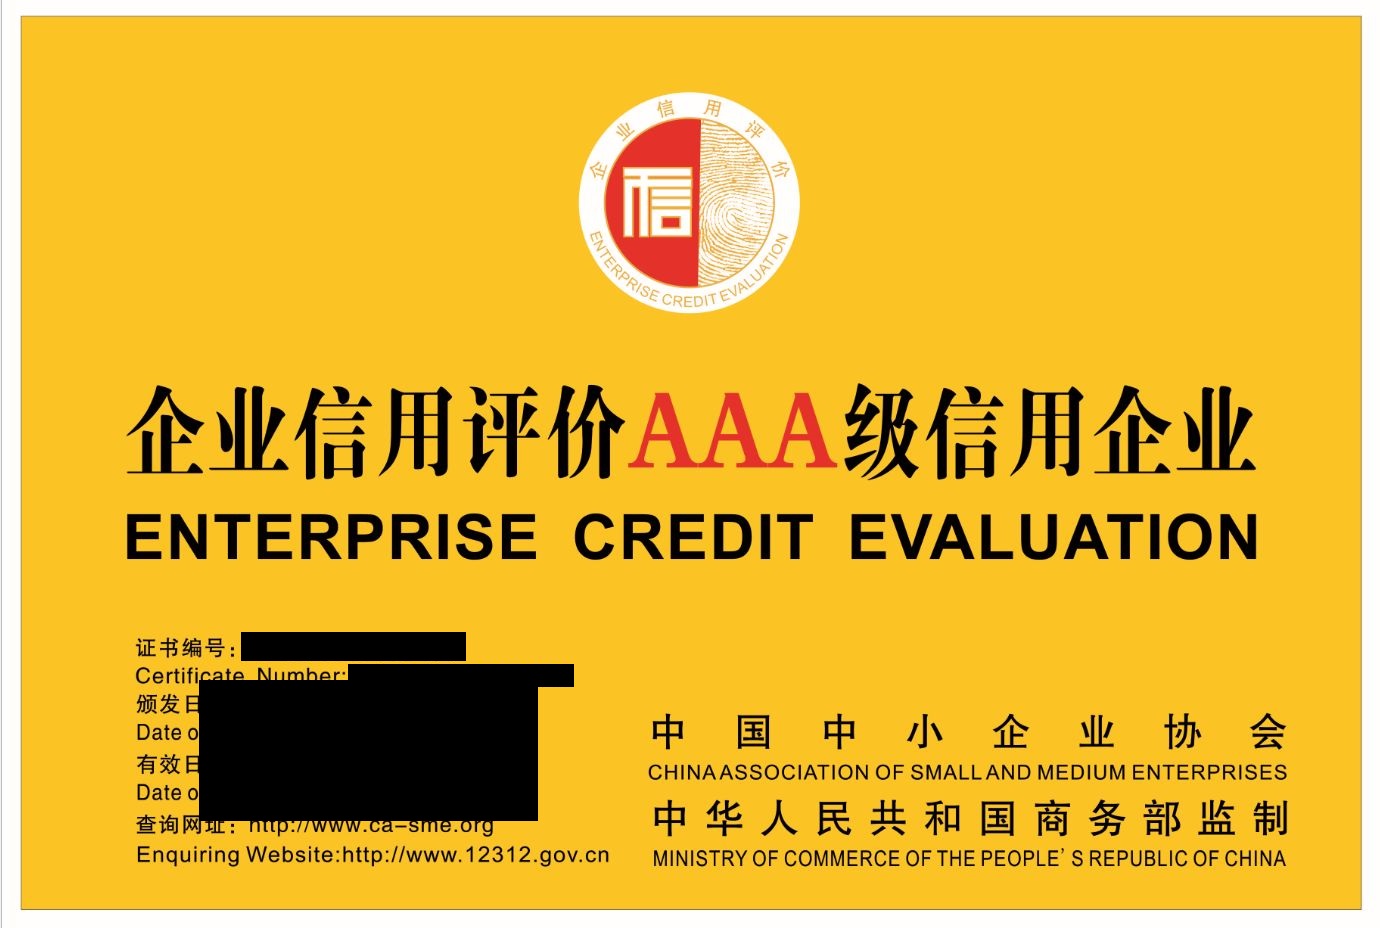 山東濟南市申報AAA認證信用等級評估